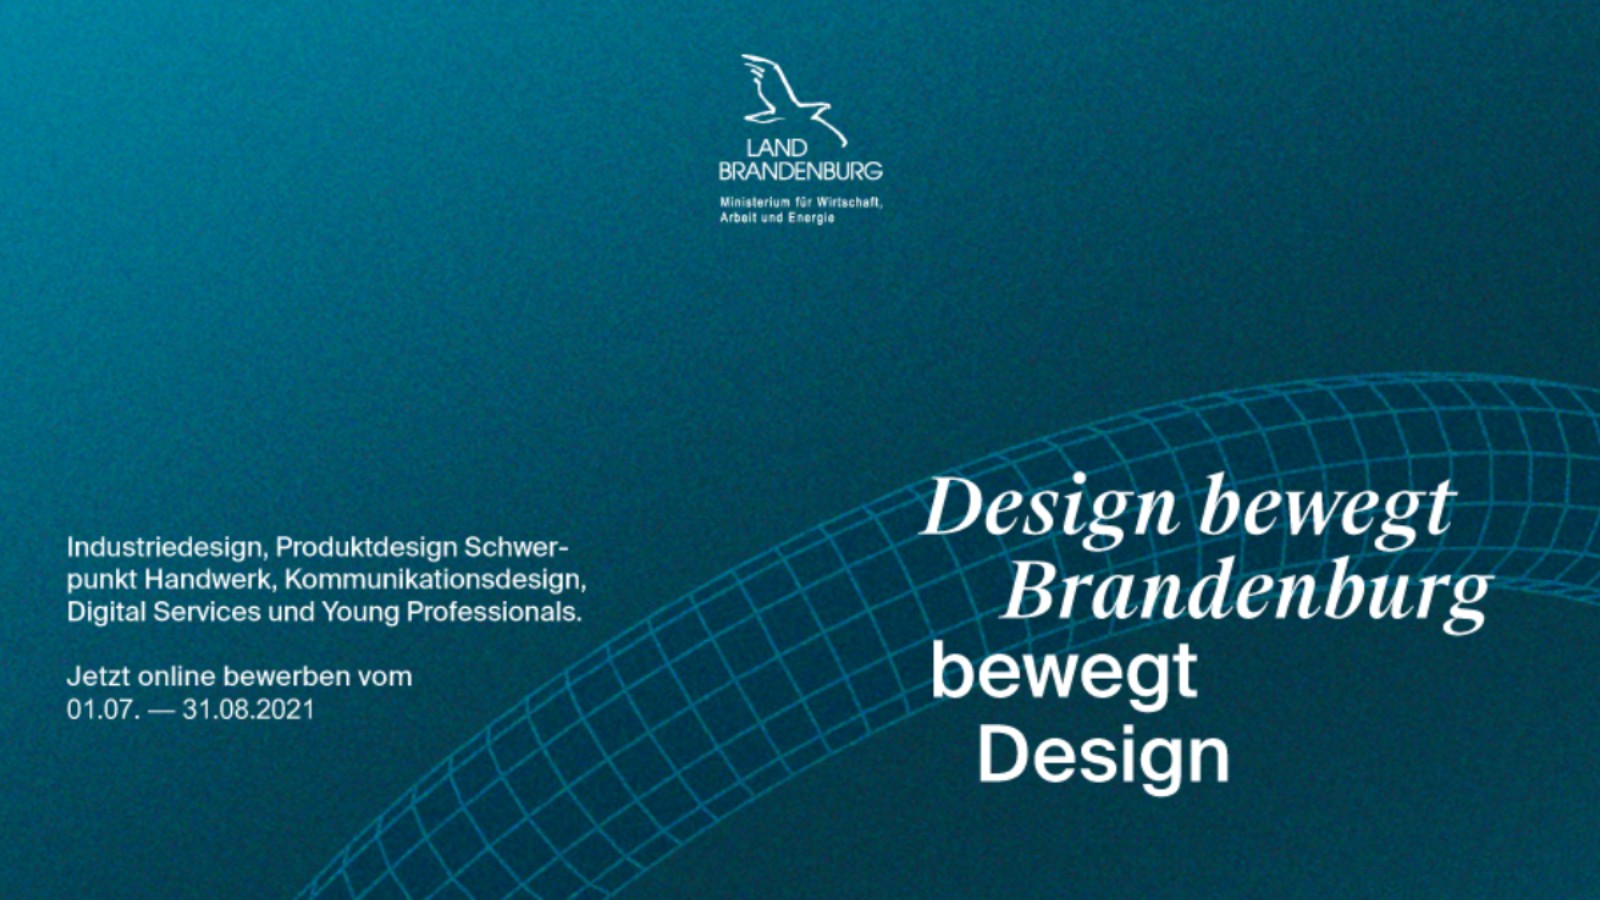 Design bewegt Brandenburg bewegt Design